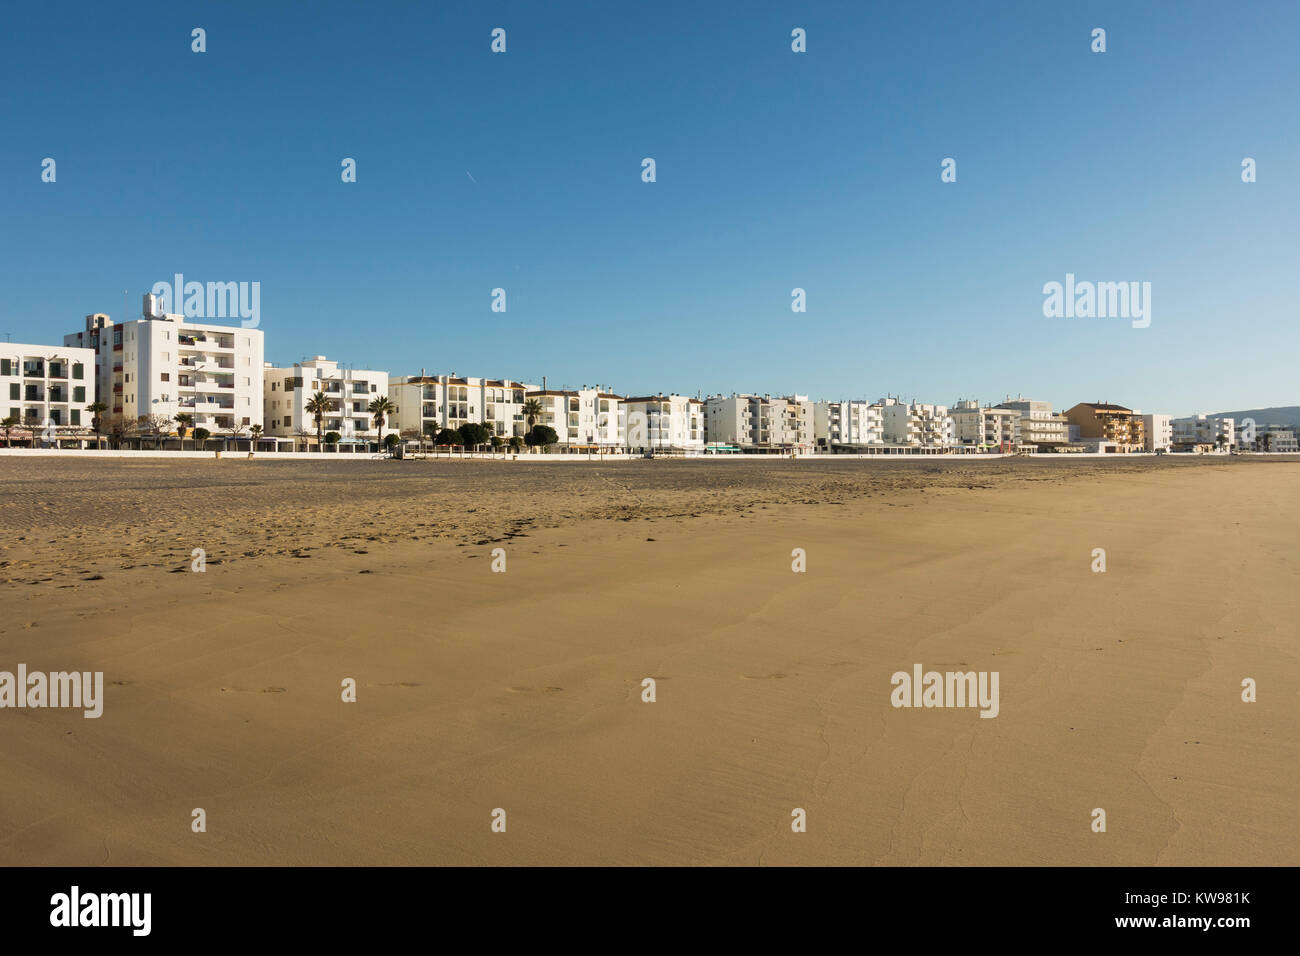 Città costiera di Barbate, bianco andaluso village, con spiagge alberghi e ristoranti, passeggiata dalla spiaggia, Costa de la luz, Andalusia, Spagna. Foto Stock